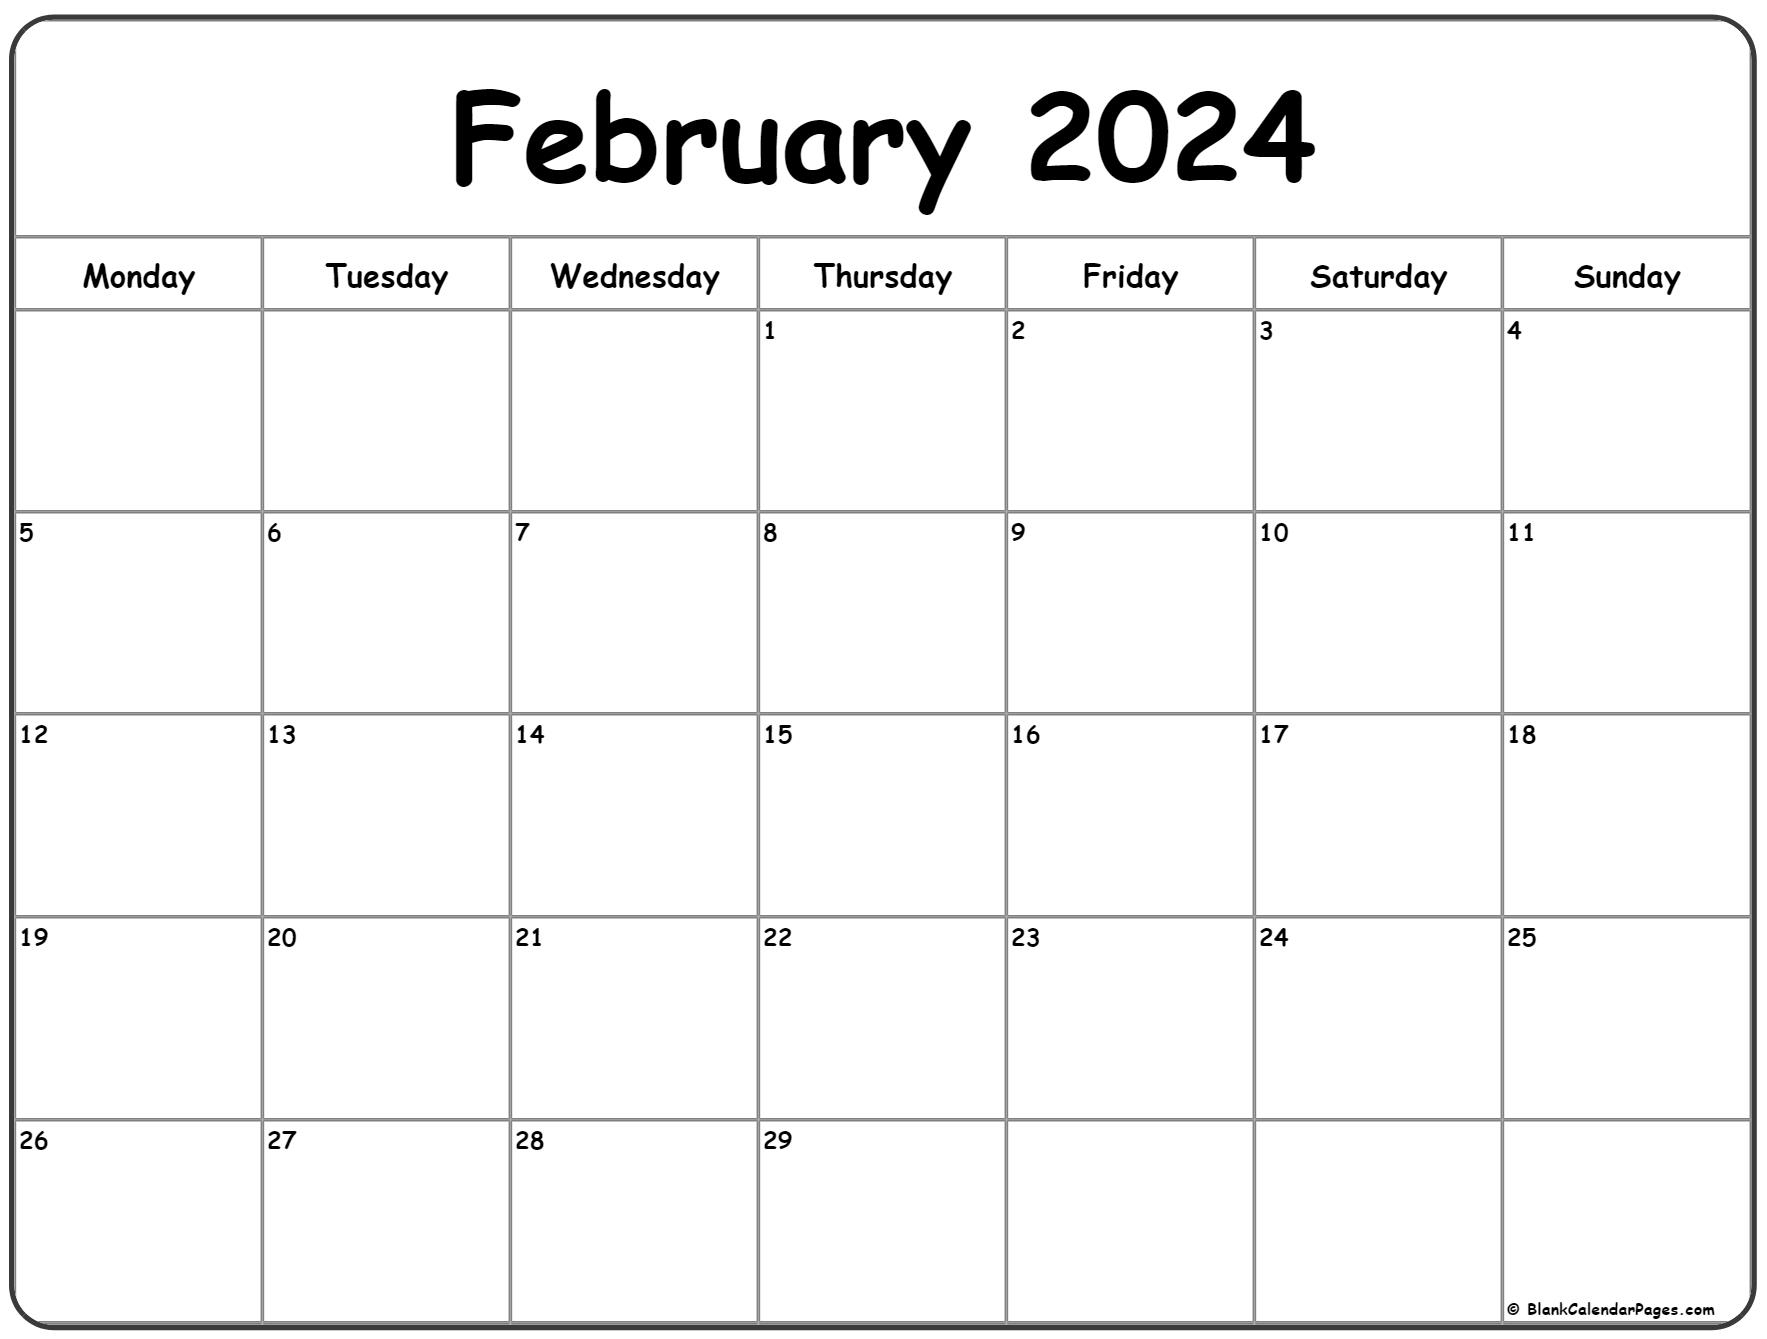 February 2024 Monday Calendar | Monday To Sunday for Printable Calendar For February 2024